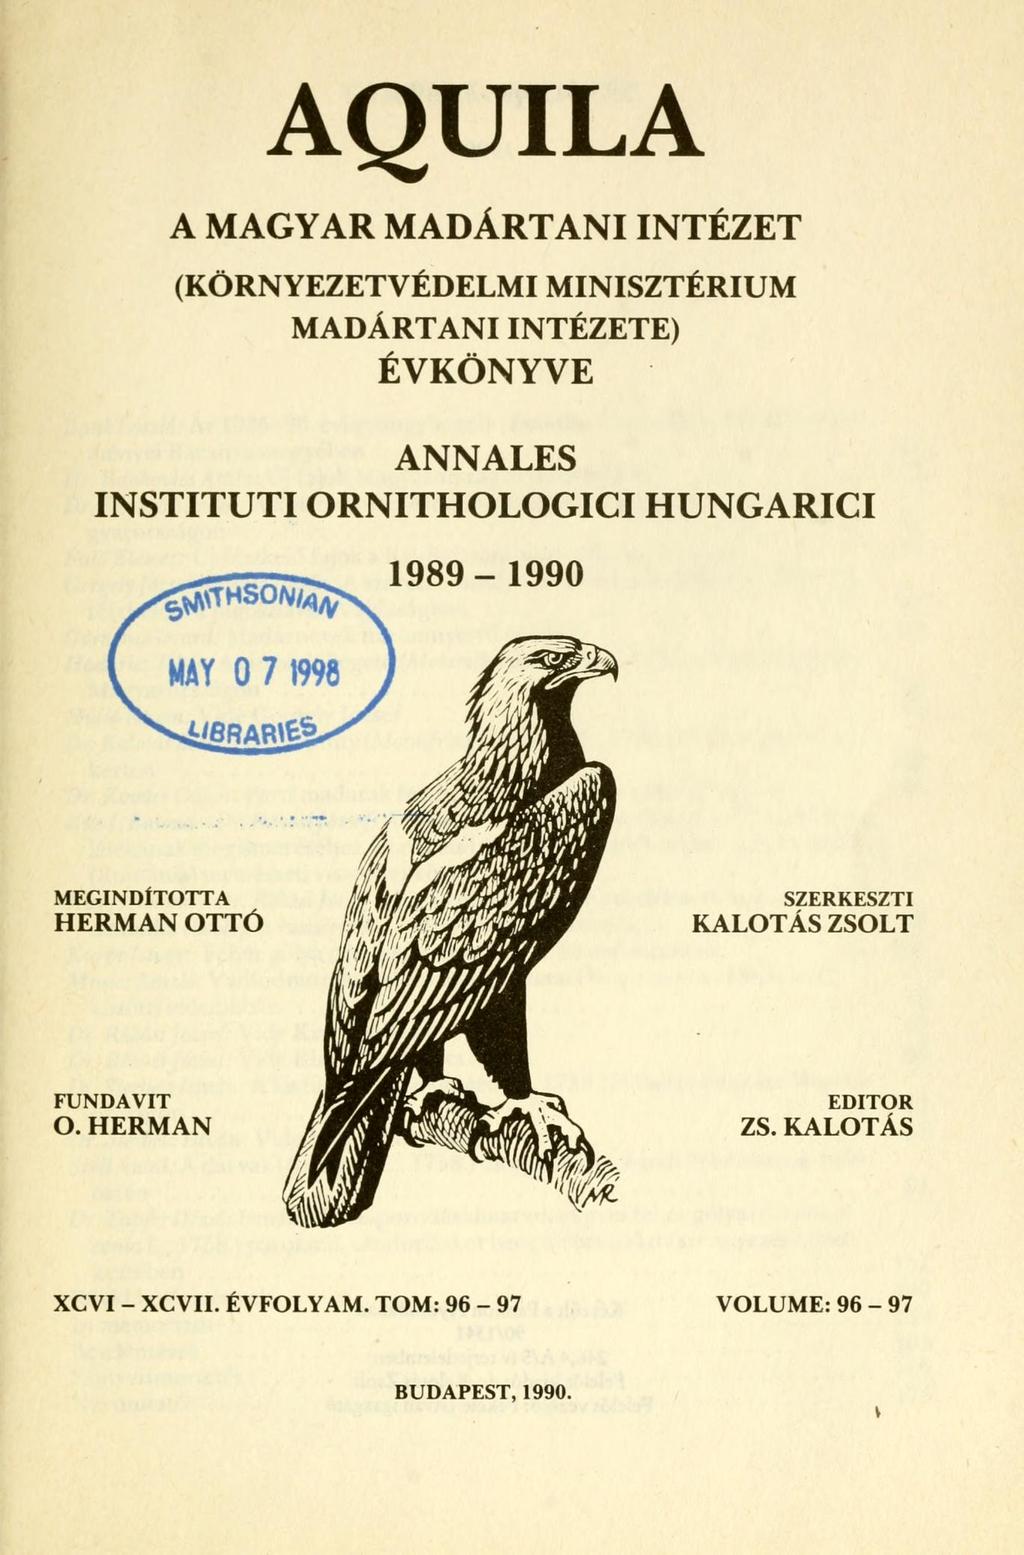 AQUILA A MAGYAR MADÁRTANI INTÉZET (KÖRNYEZETVÉDELMI MINISZTÉRIUM MADÁRTANI INTÉZETE) ÉVKÖNYVE ANNALES INSTITUTIORNITHOLOGICIHUNGARICI 1989-1990